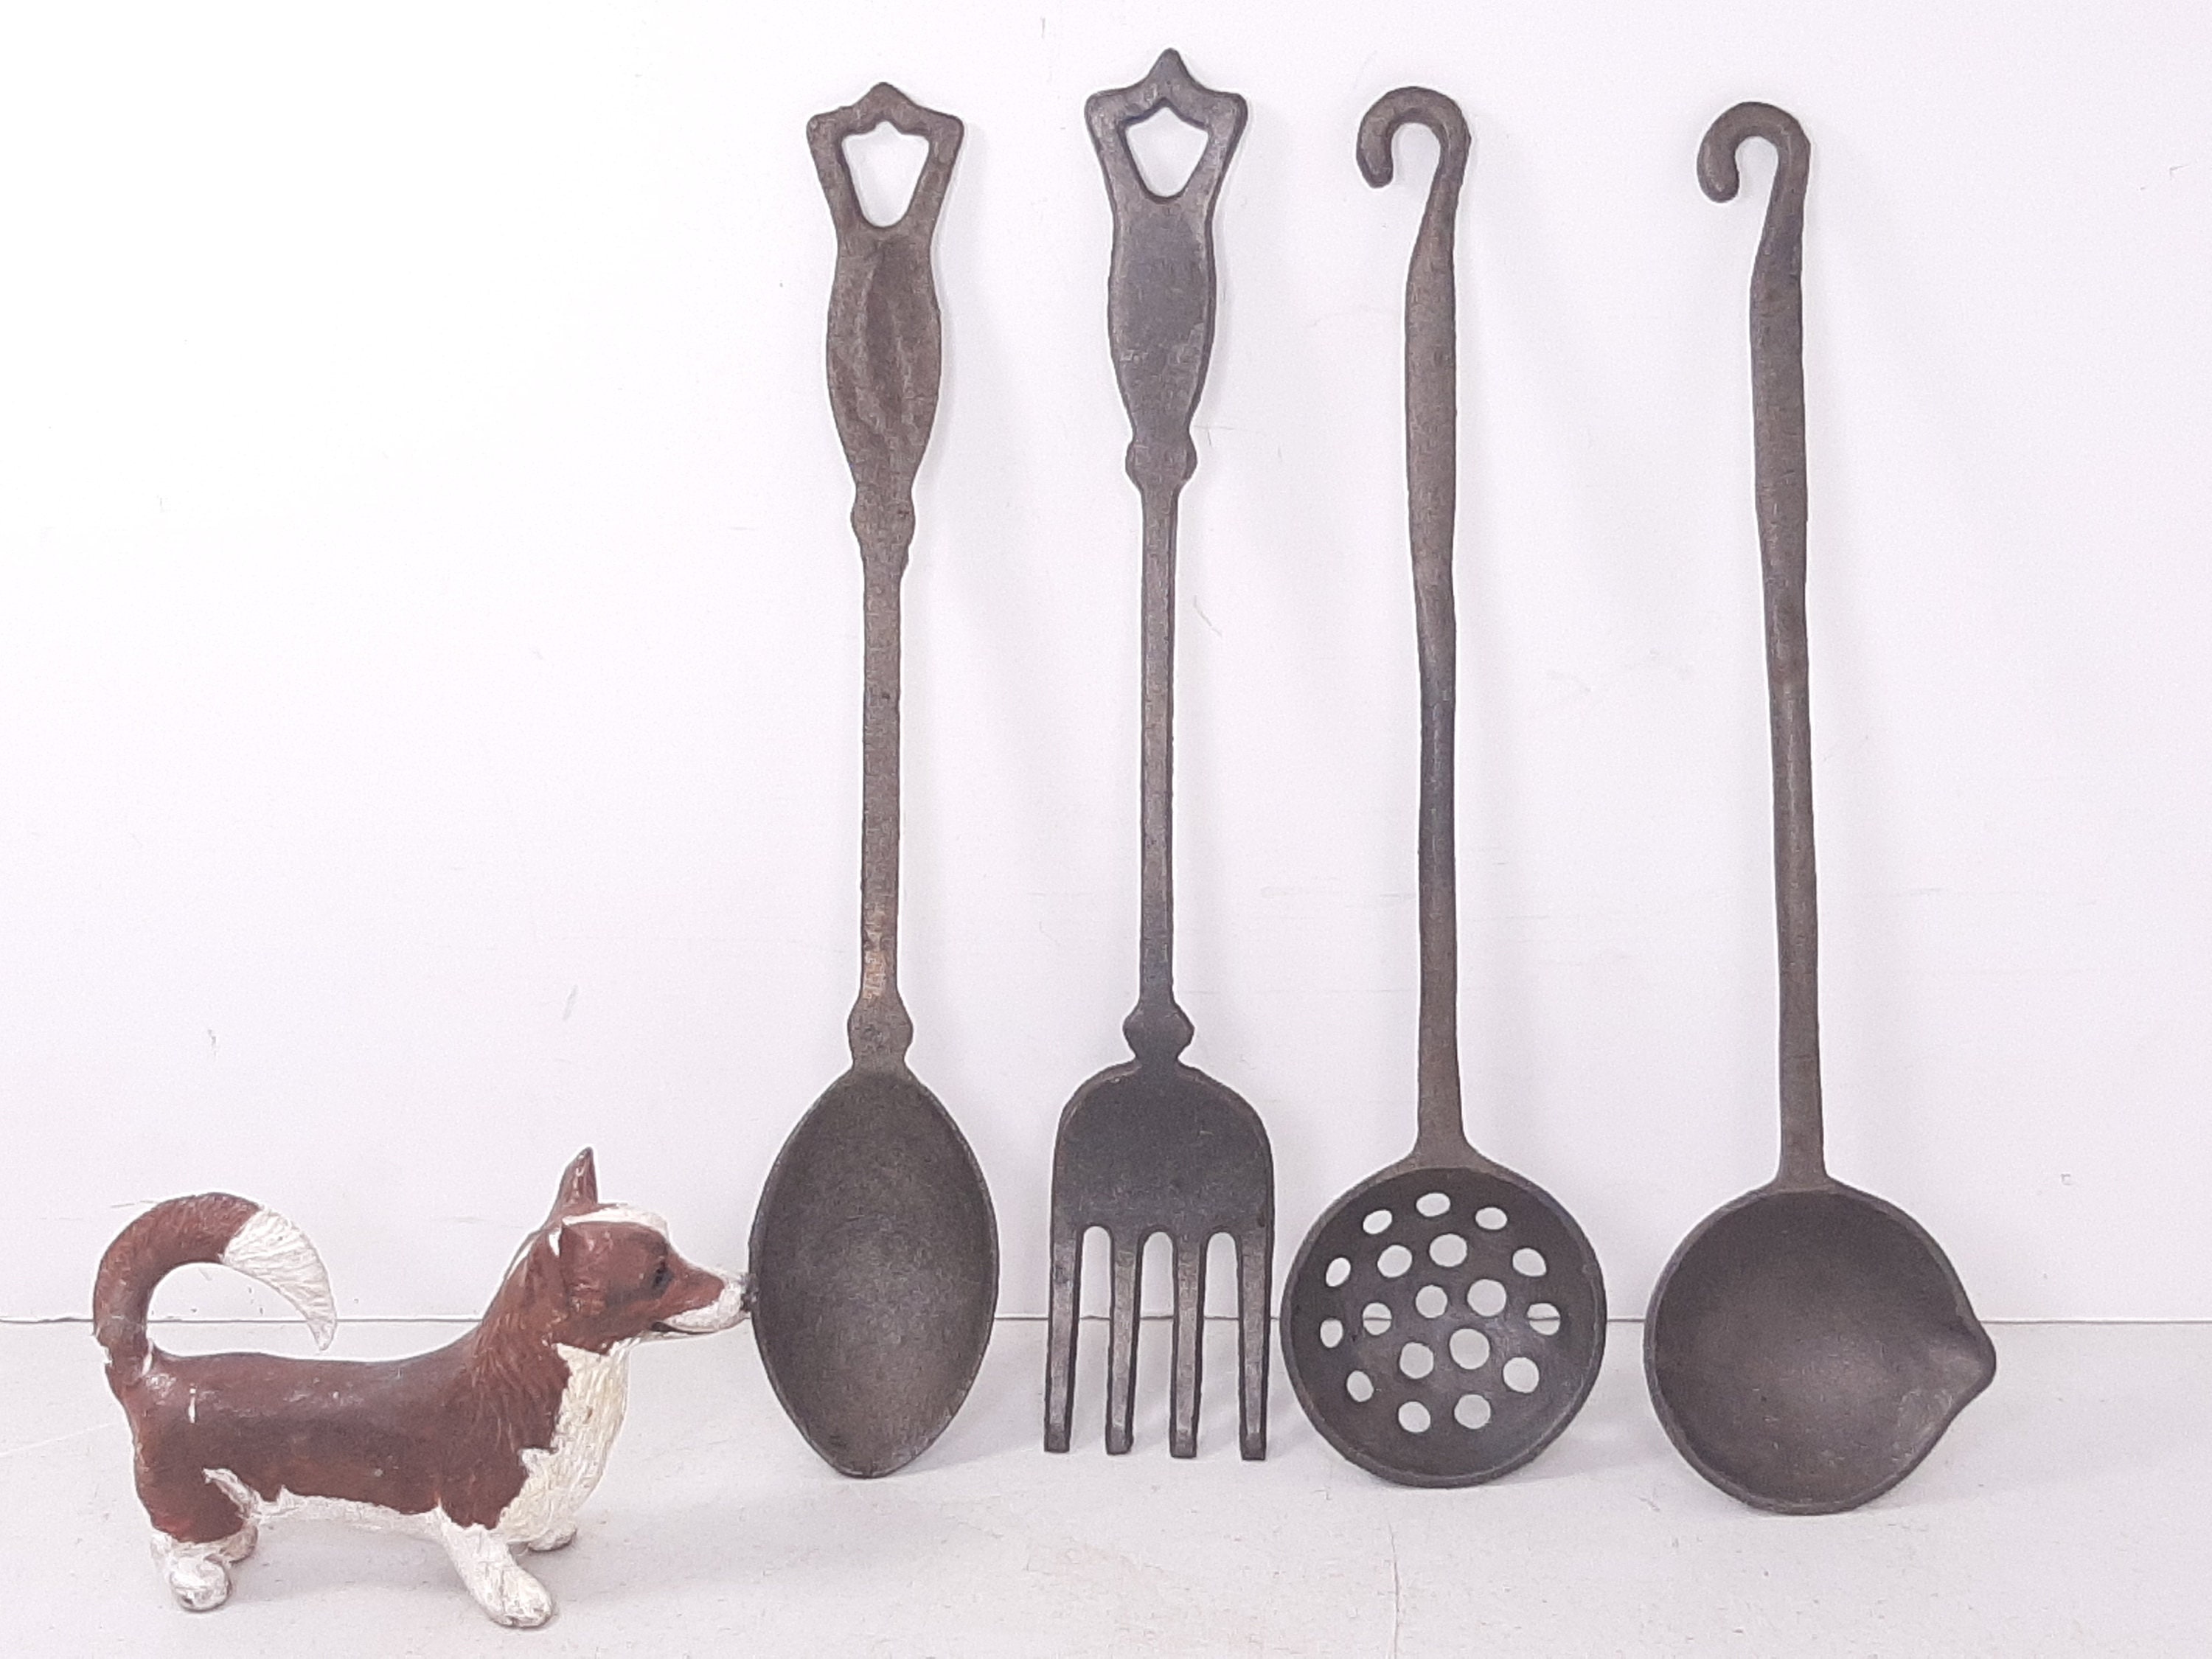 Vintage Cast Iron 3 Piece Utensil Set: For Spoon, Ladle